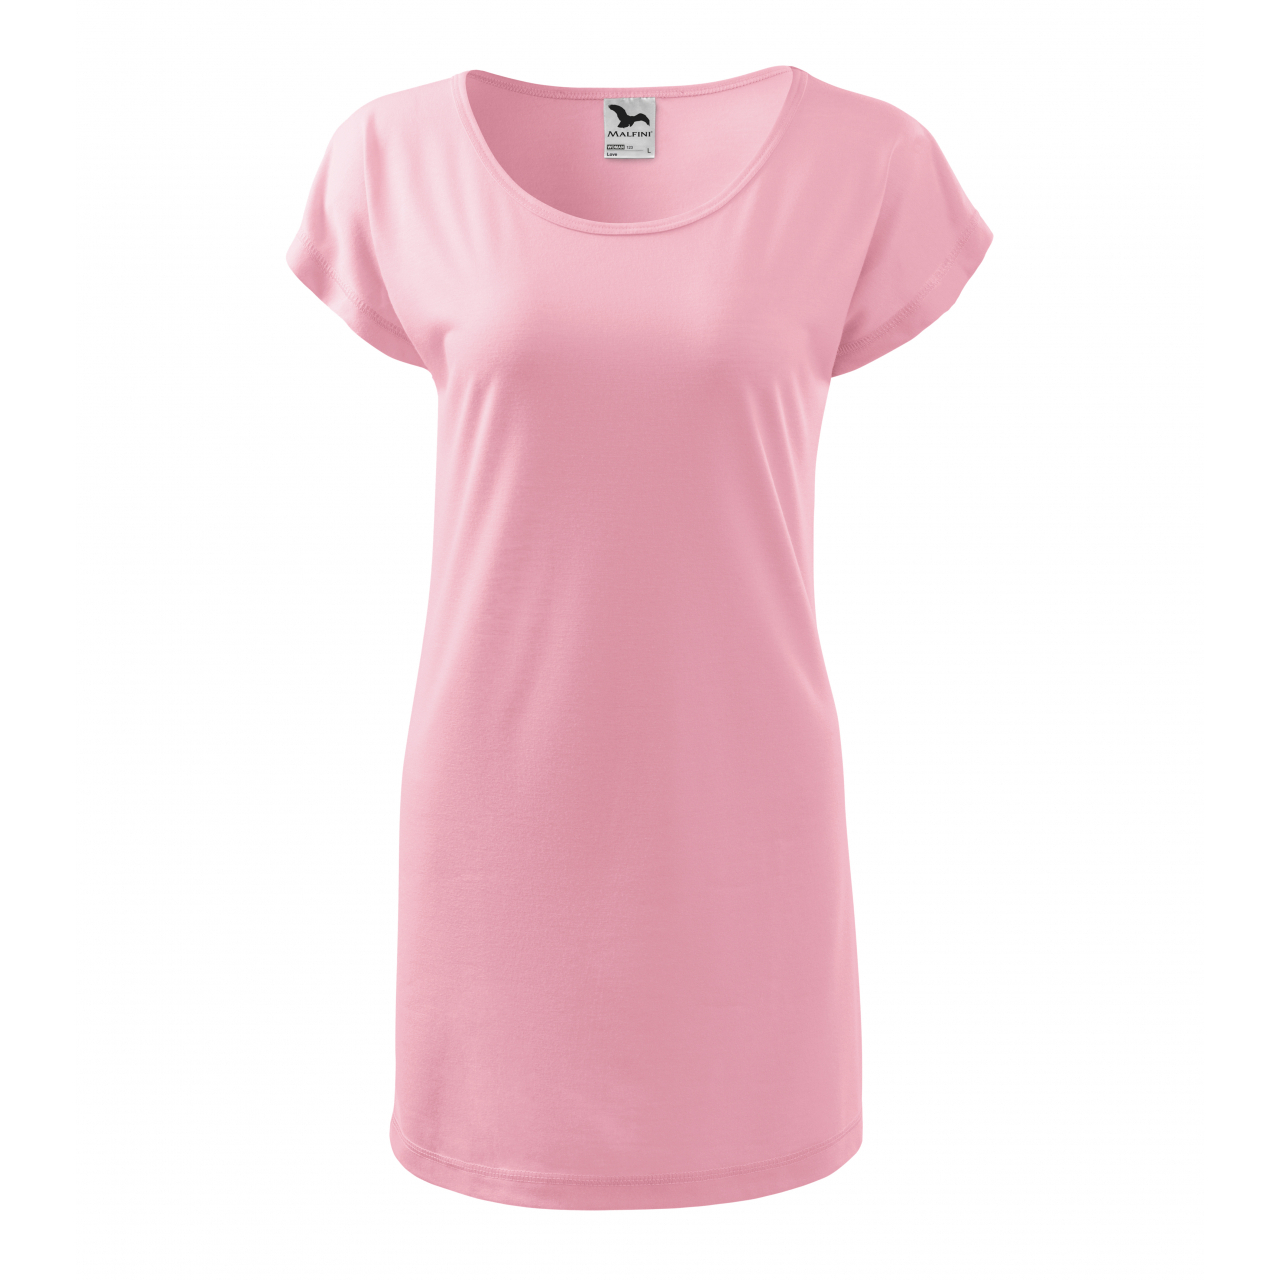 Šaty Malfini Love - světle růžové, L